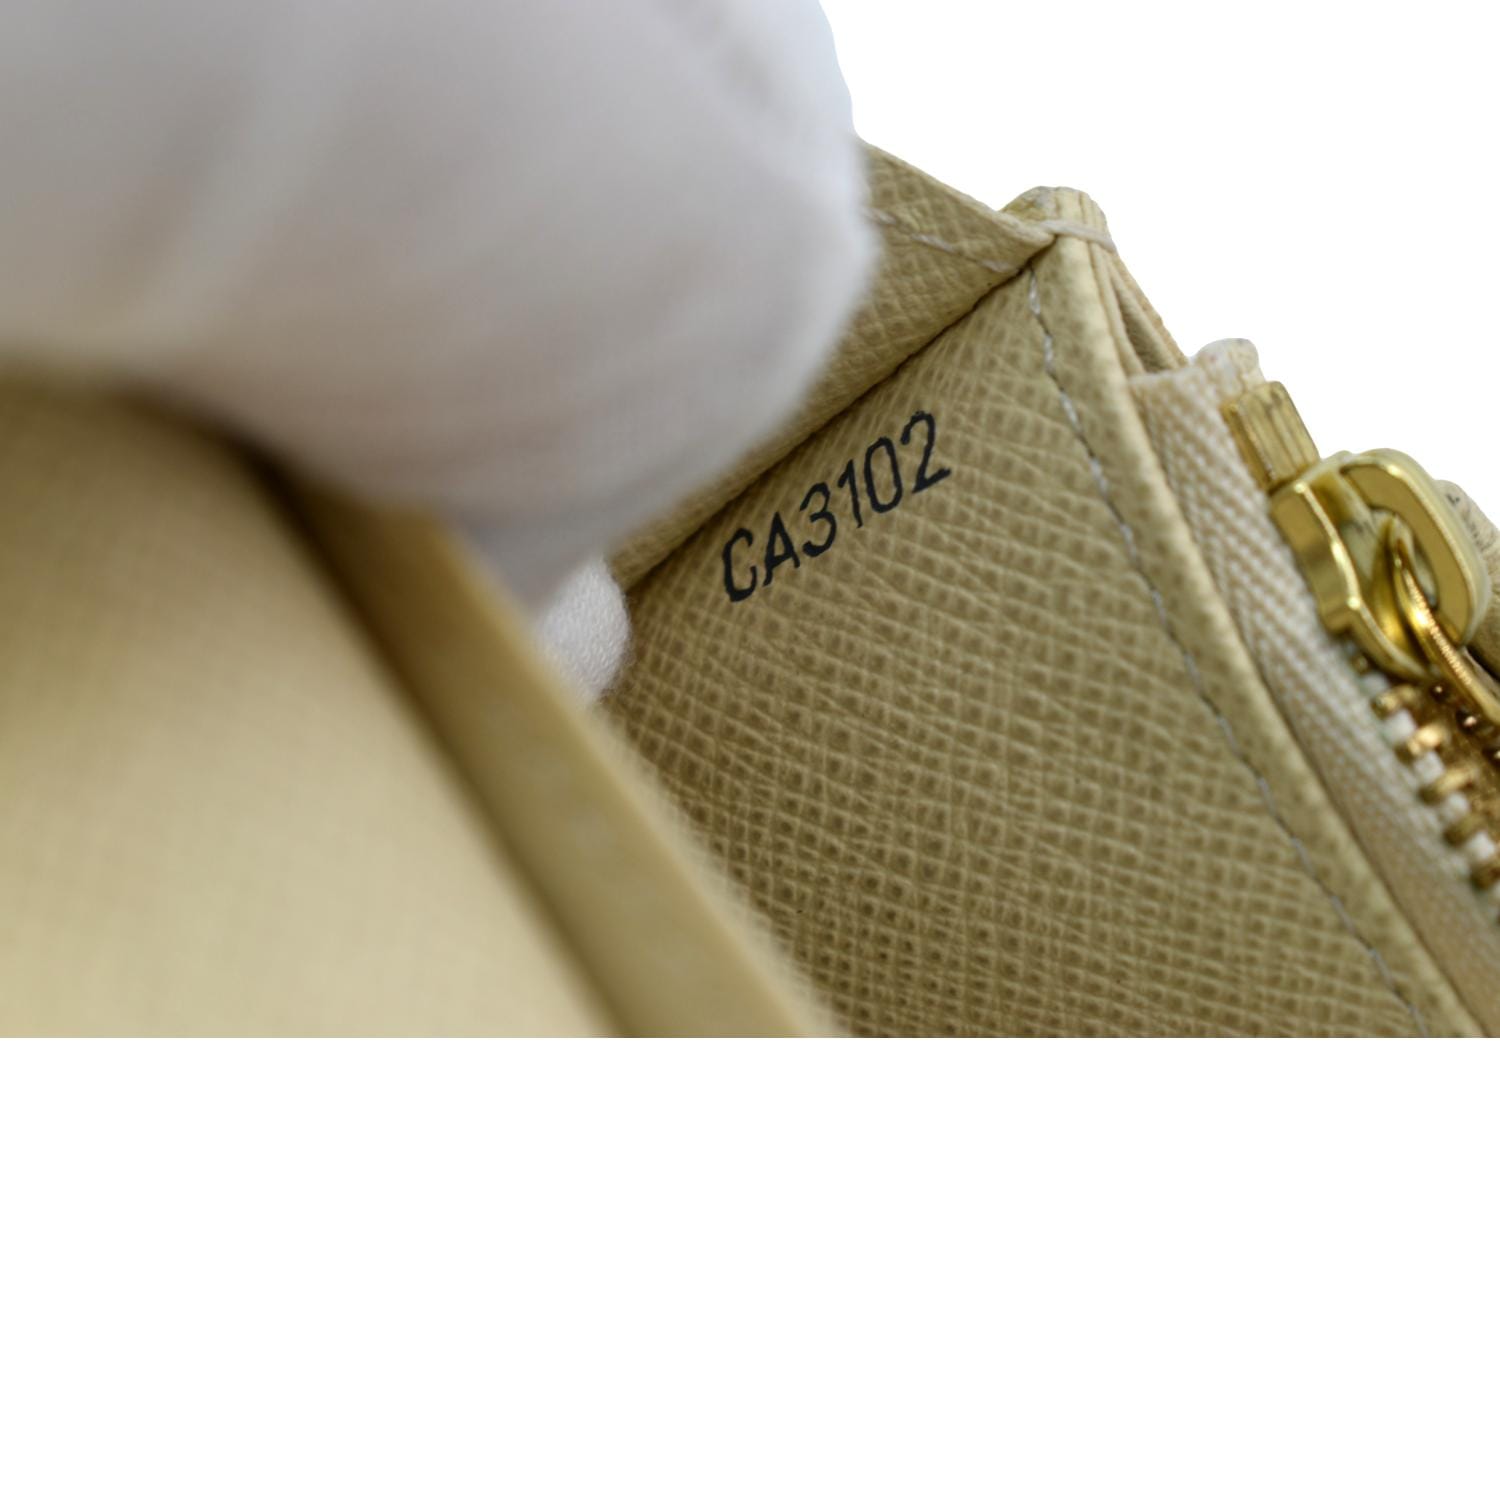 Emilie Damier Azur Wallet – Keeks Designer Handbags